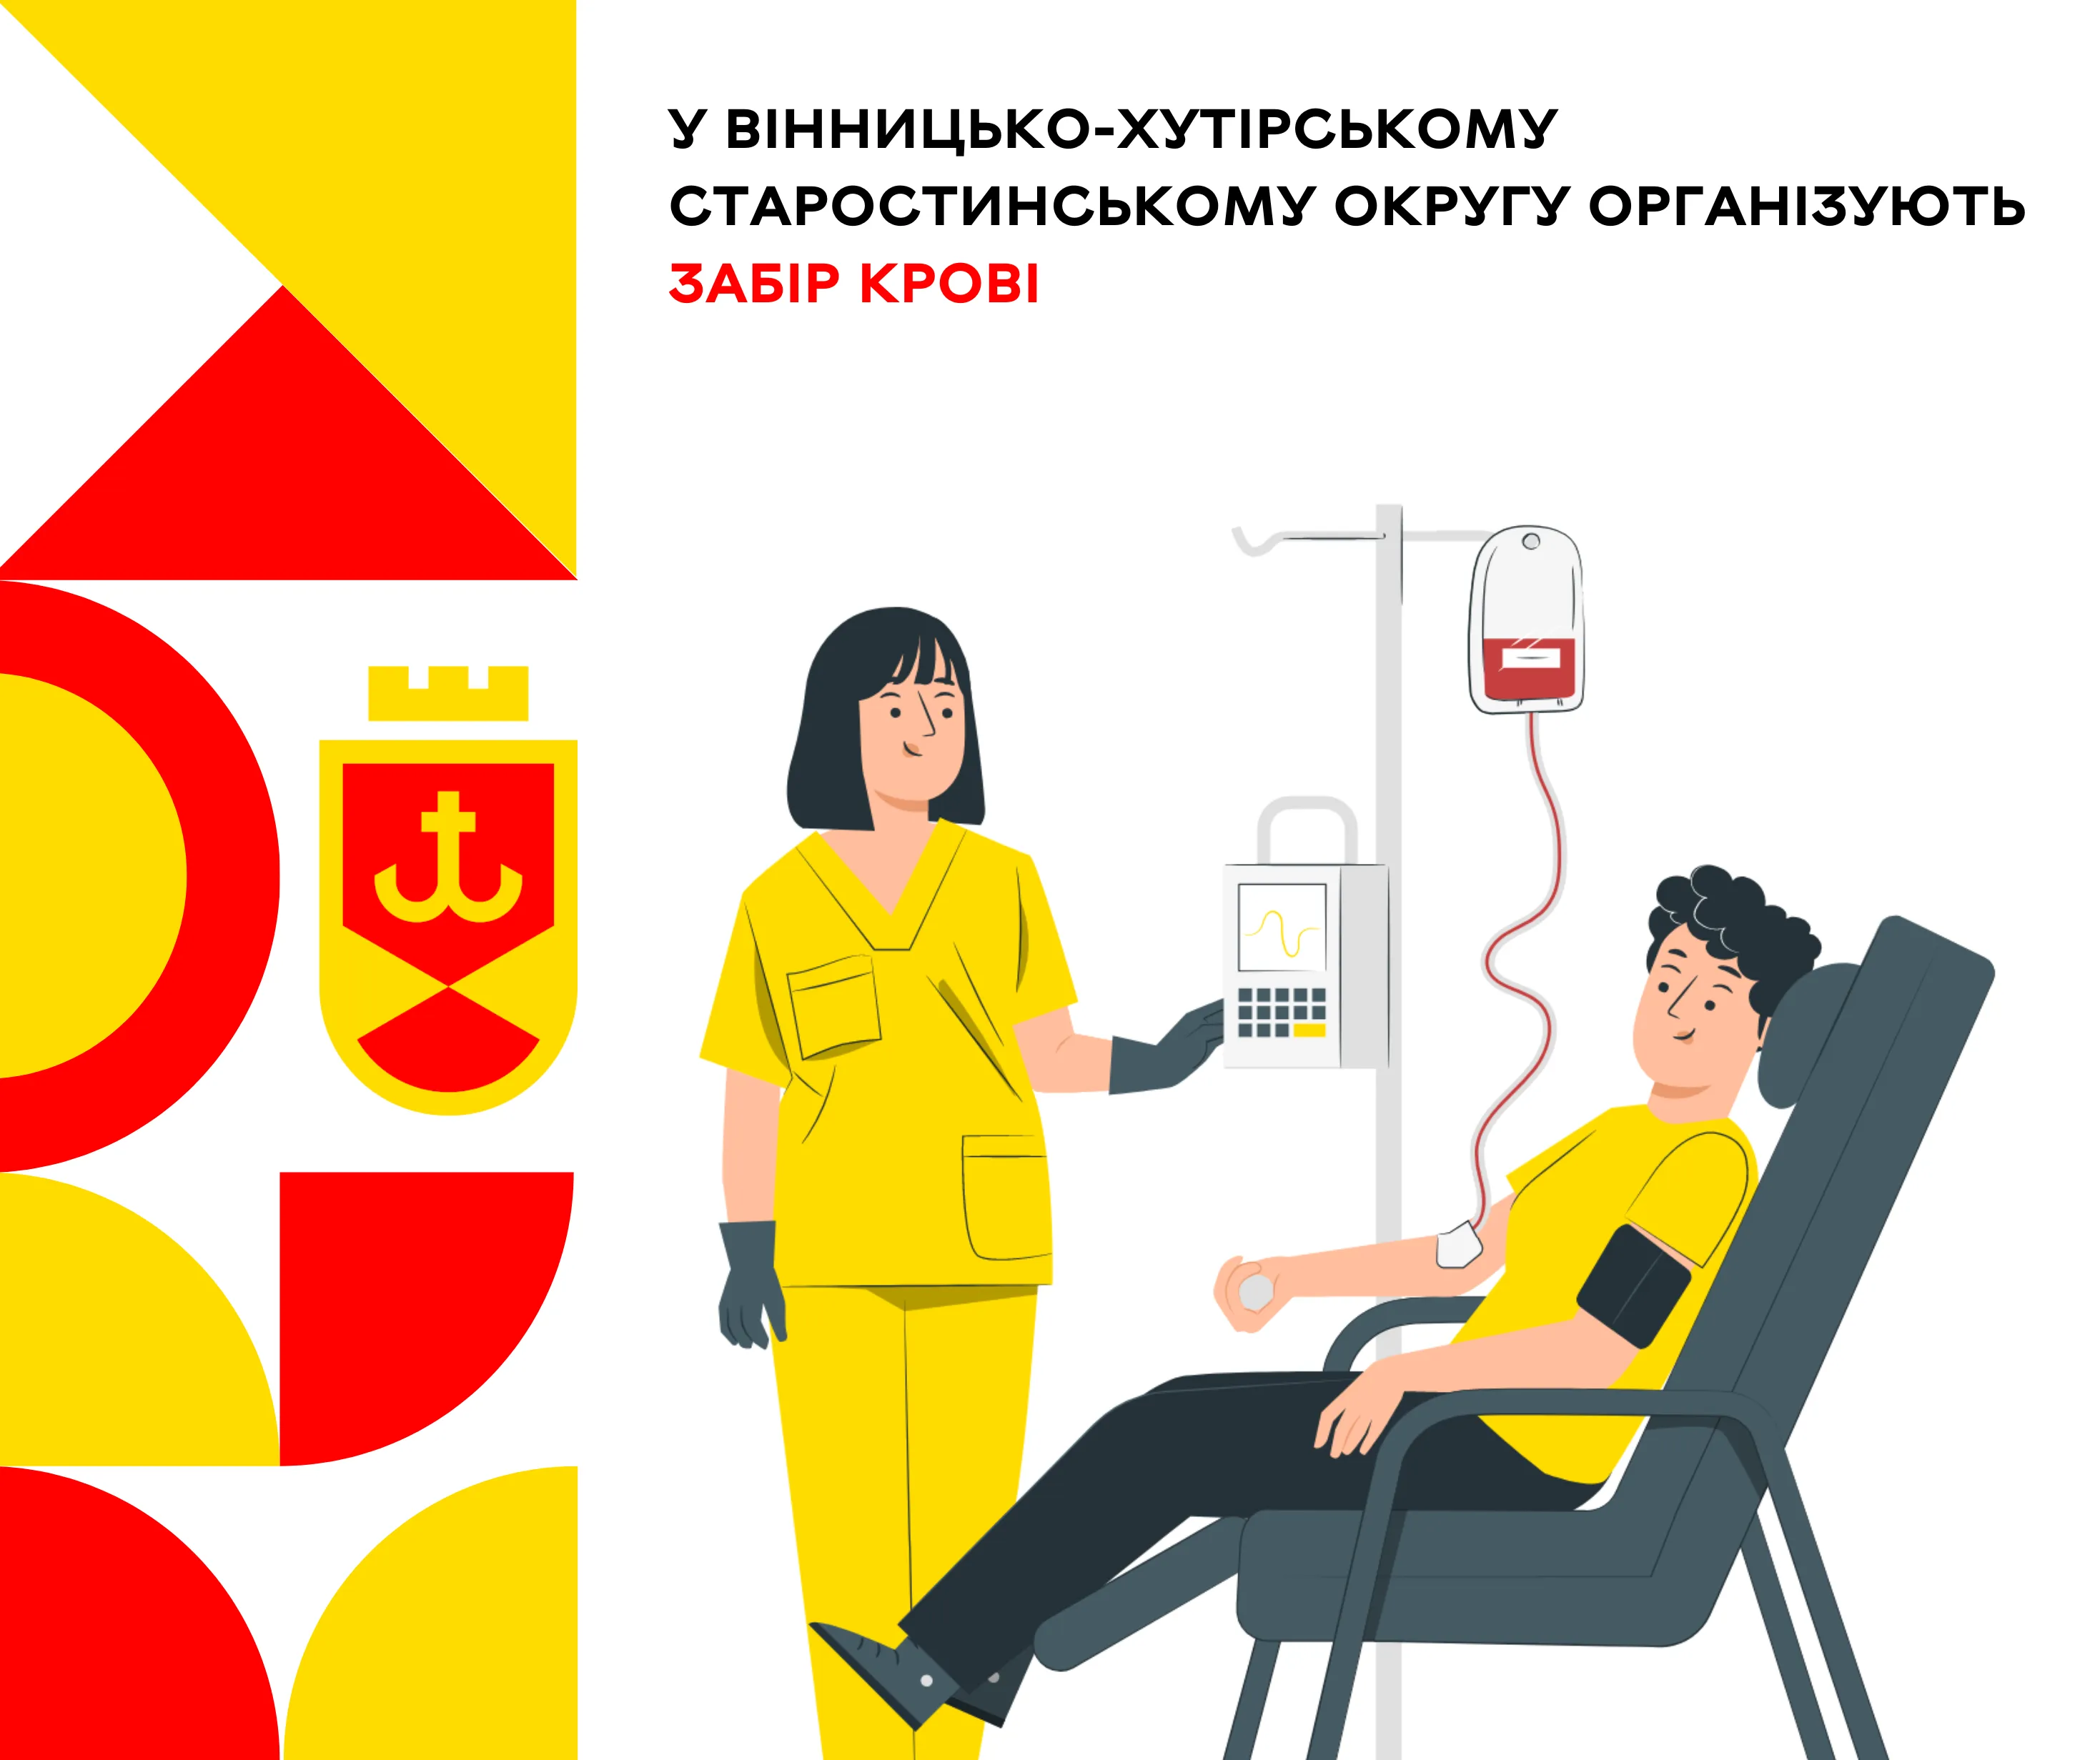 У Вінницько-хутірському старостинському округу організують забір крові